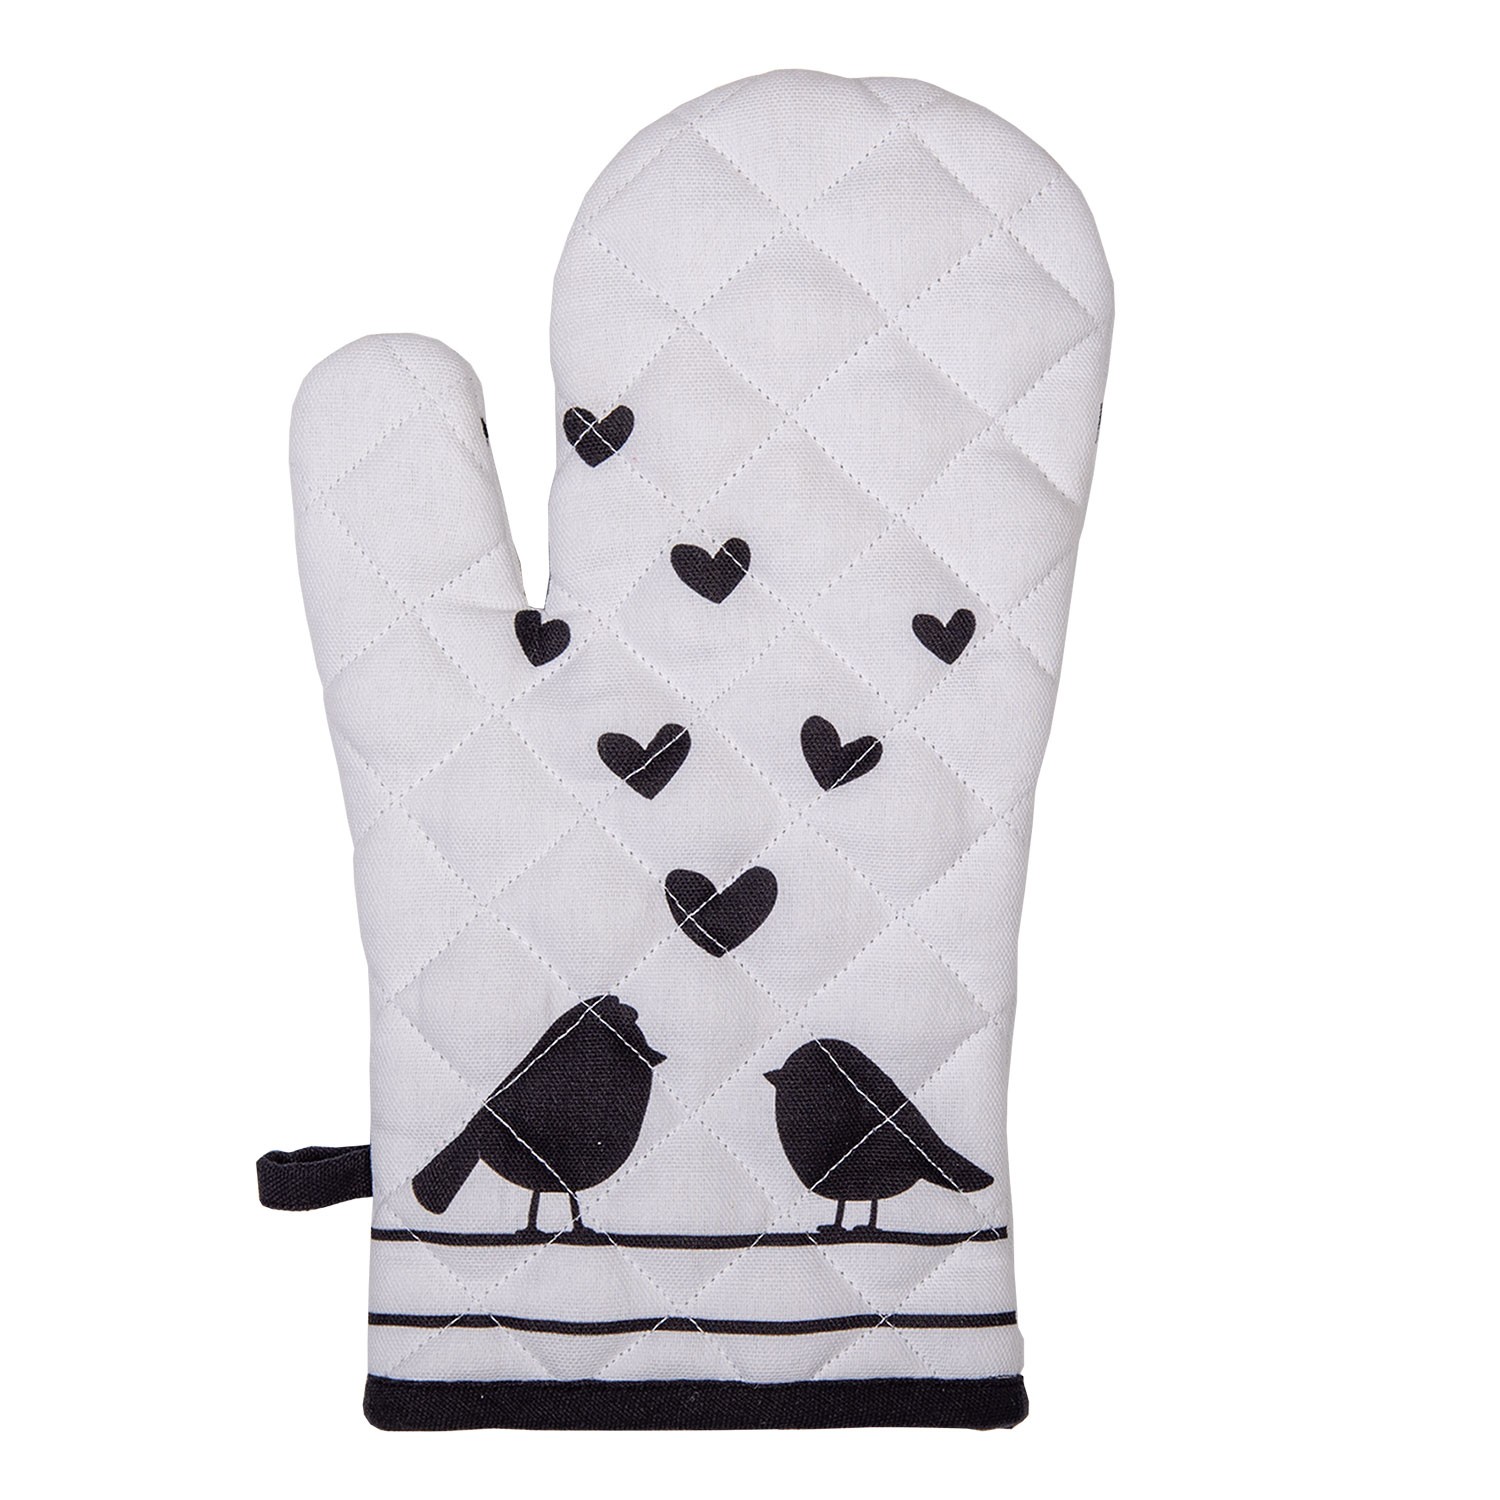 Chňapka - rukavice s ptáčky Love Birds - 18*30 cm LBS44